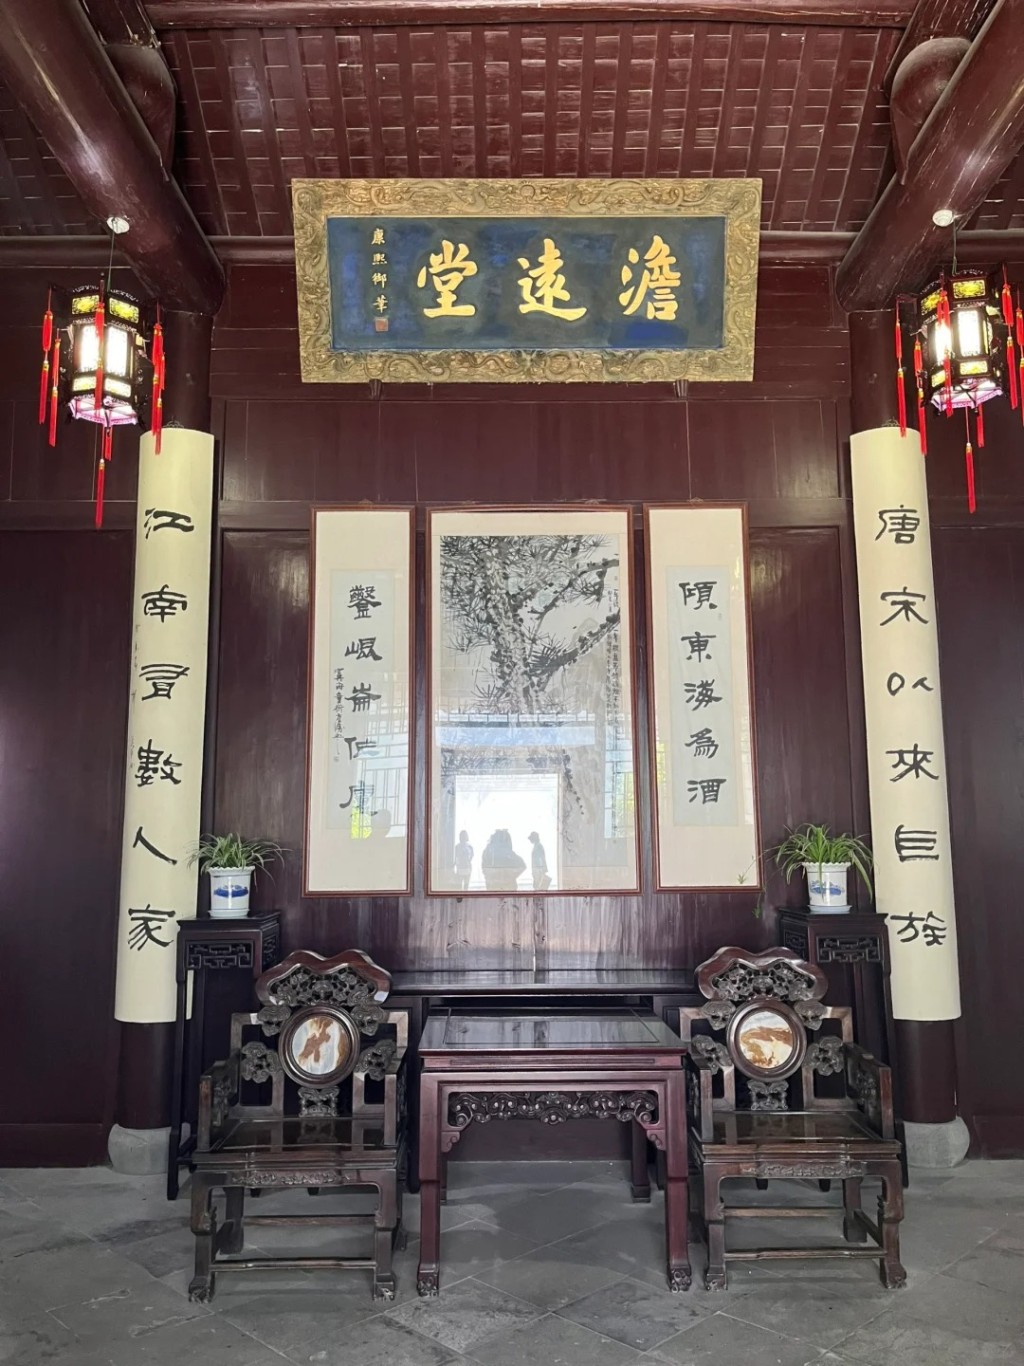 金庸在浙江的舊居。小紅書